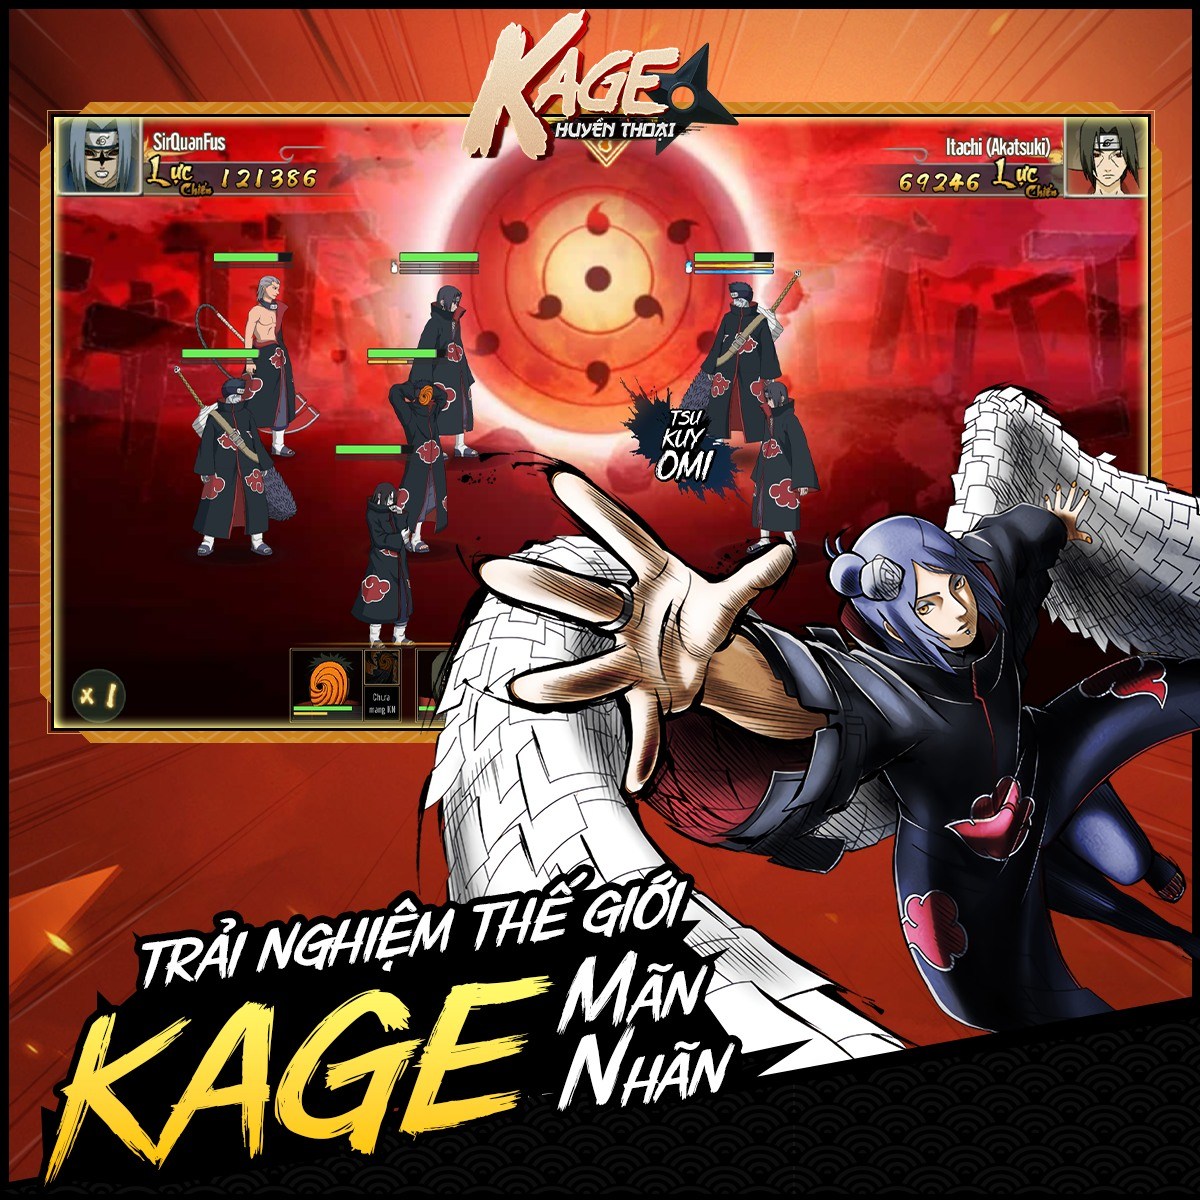 Kage Huyền Thoại: Game đấu tướng rảnh tay đề tài Naruto đến từ REGZ Games